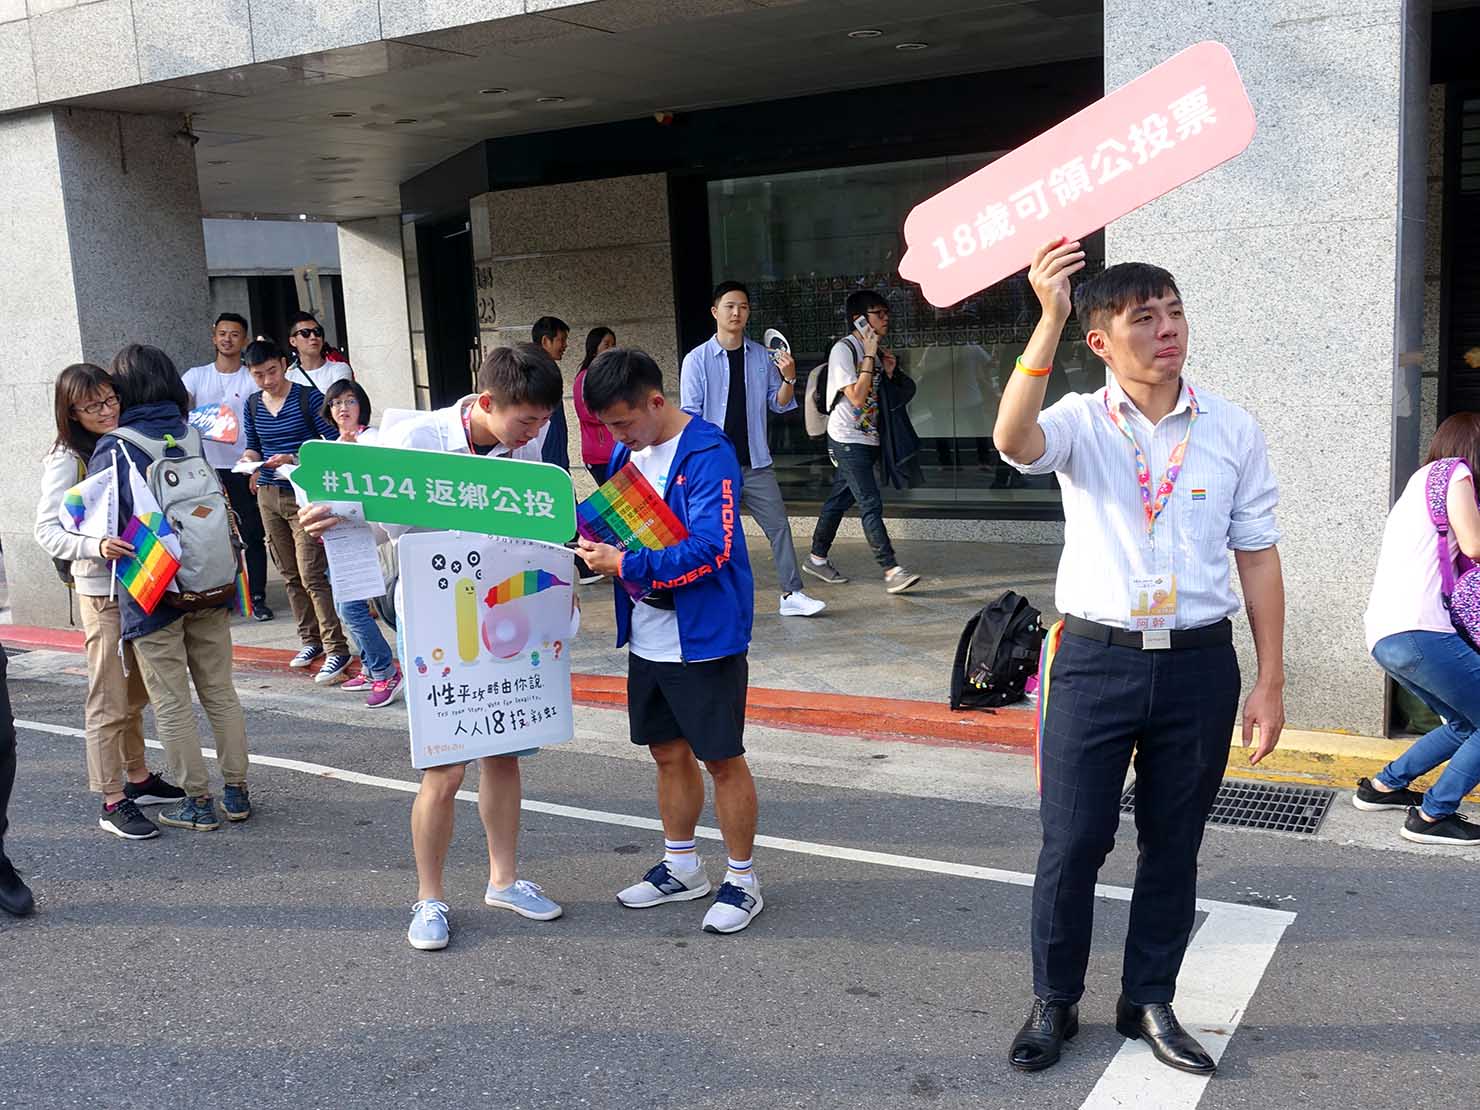 台灣同志遊行（台湾LGBTプライド）2018で国民投票を呼びかける参加者